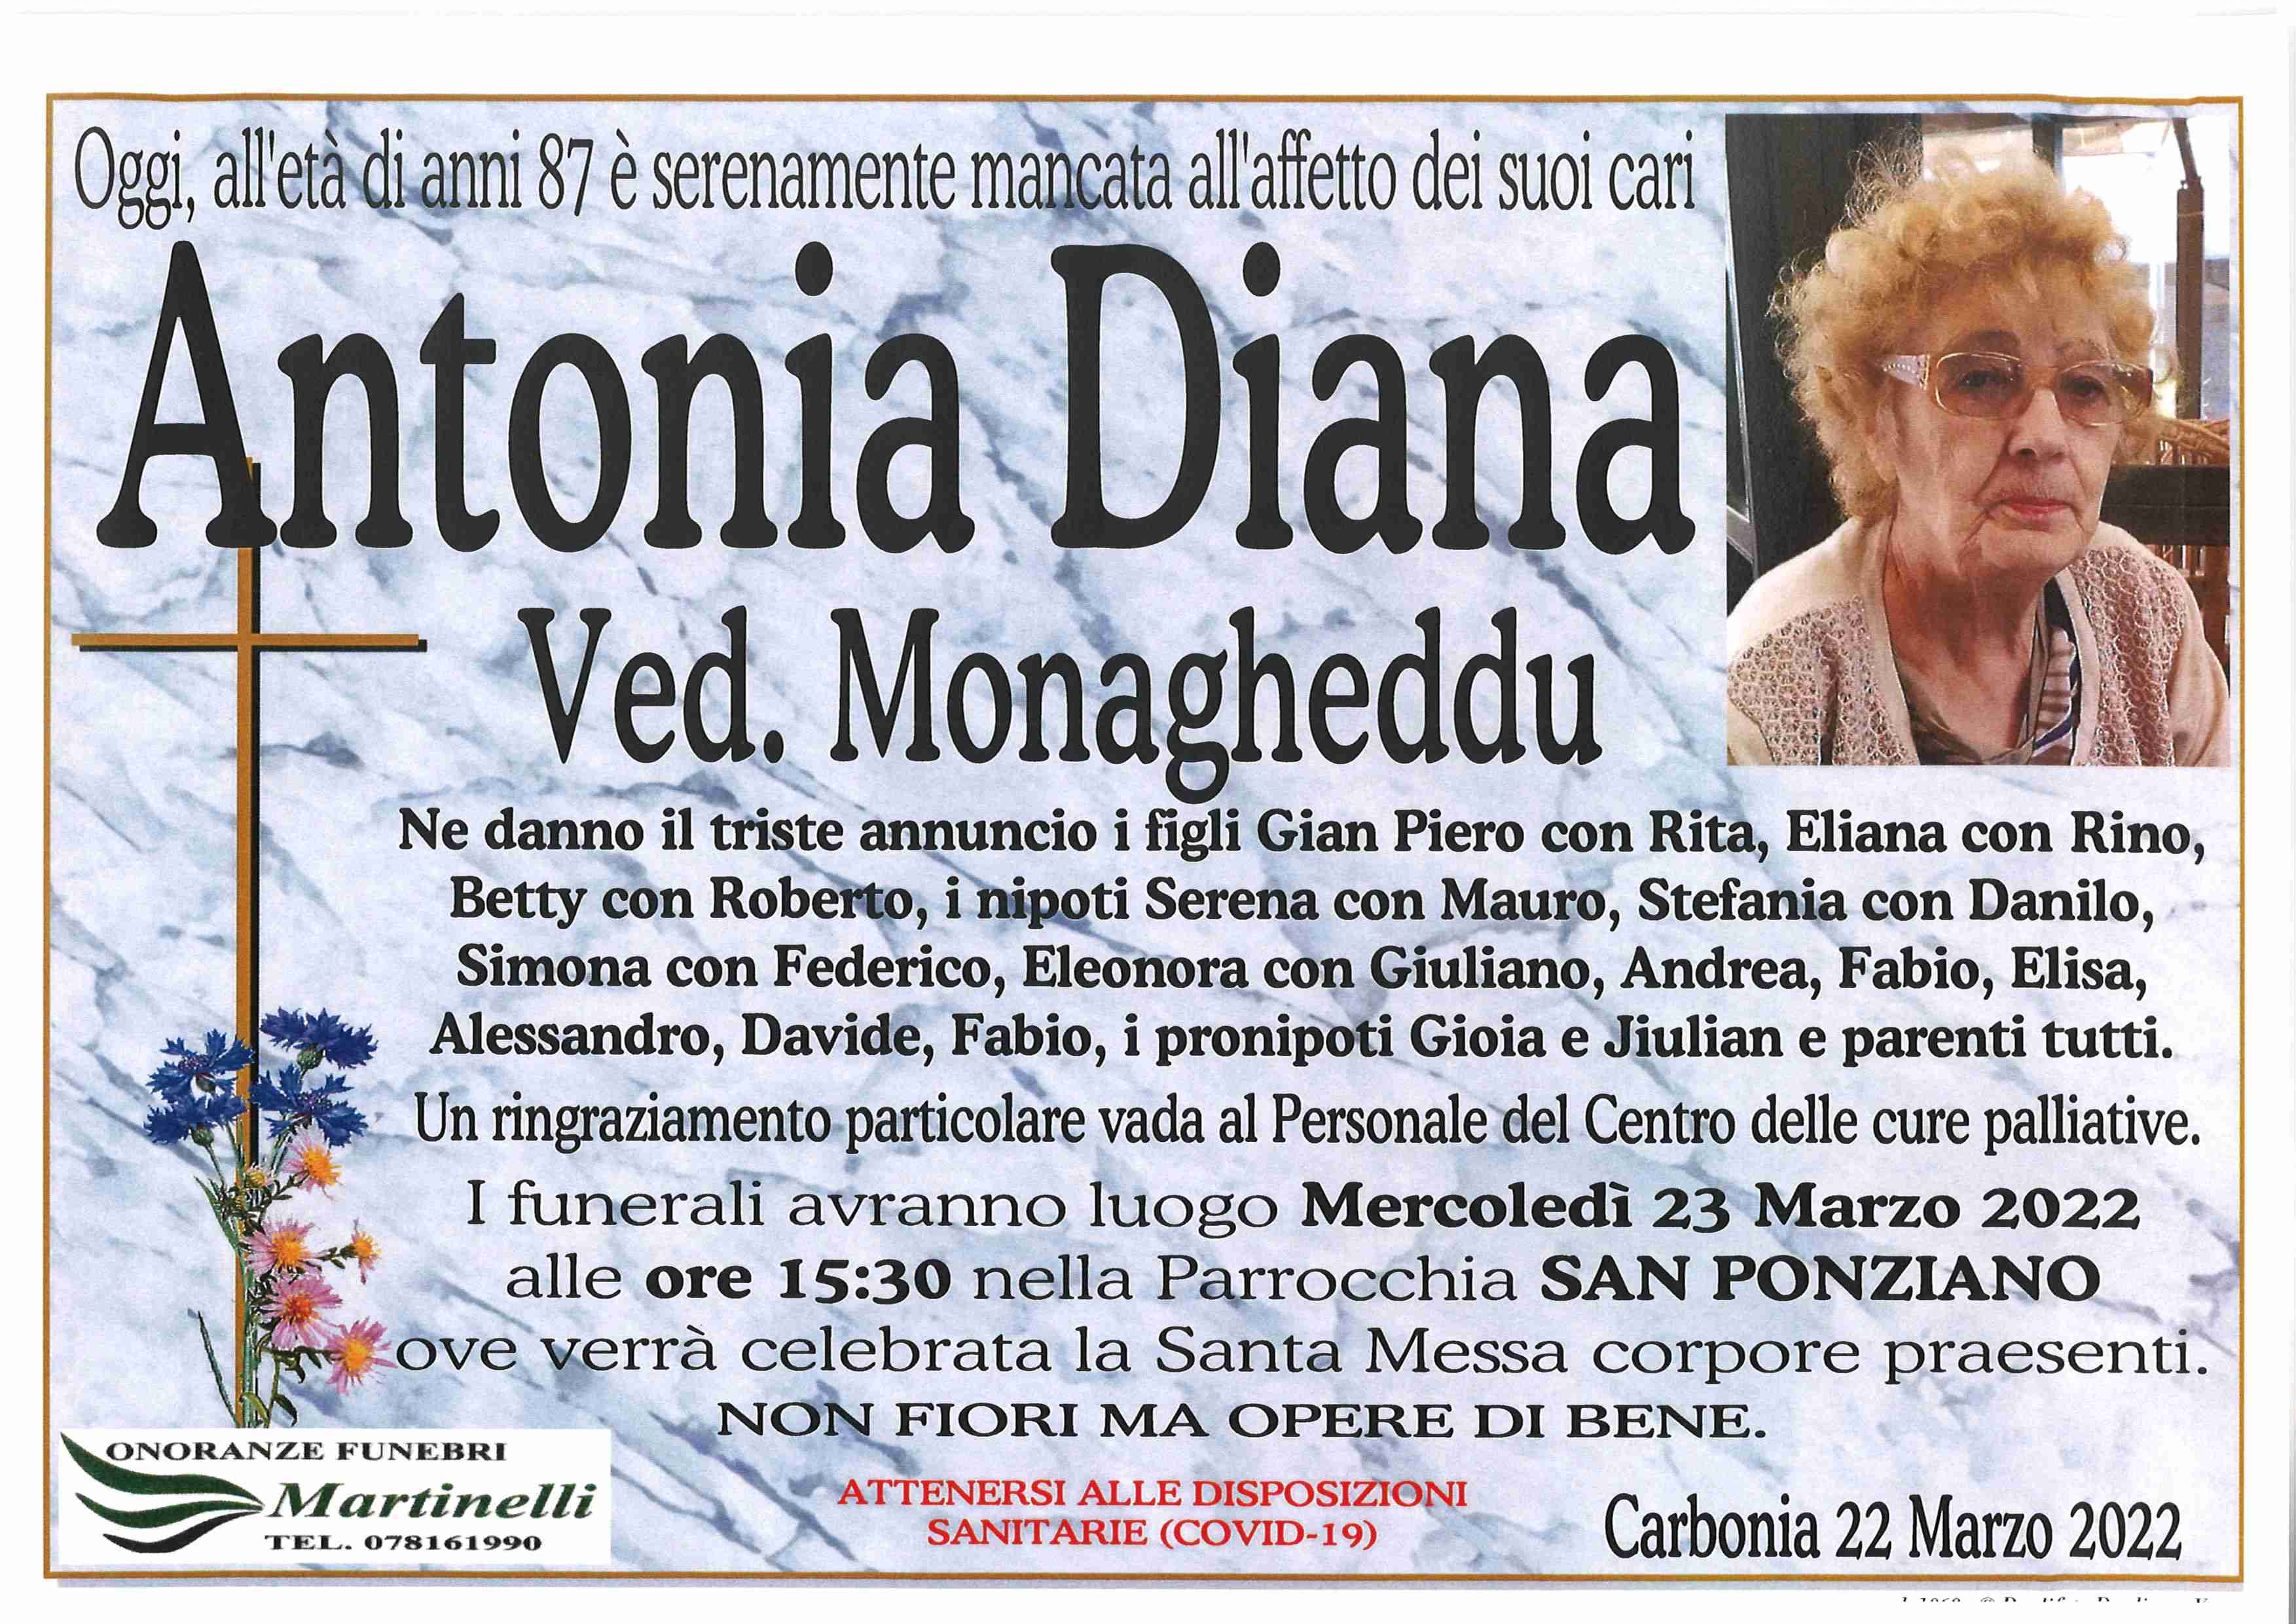 Diana Antonia